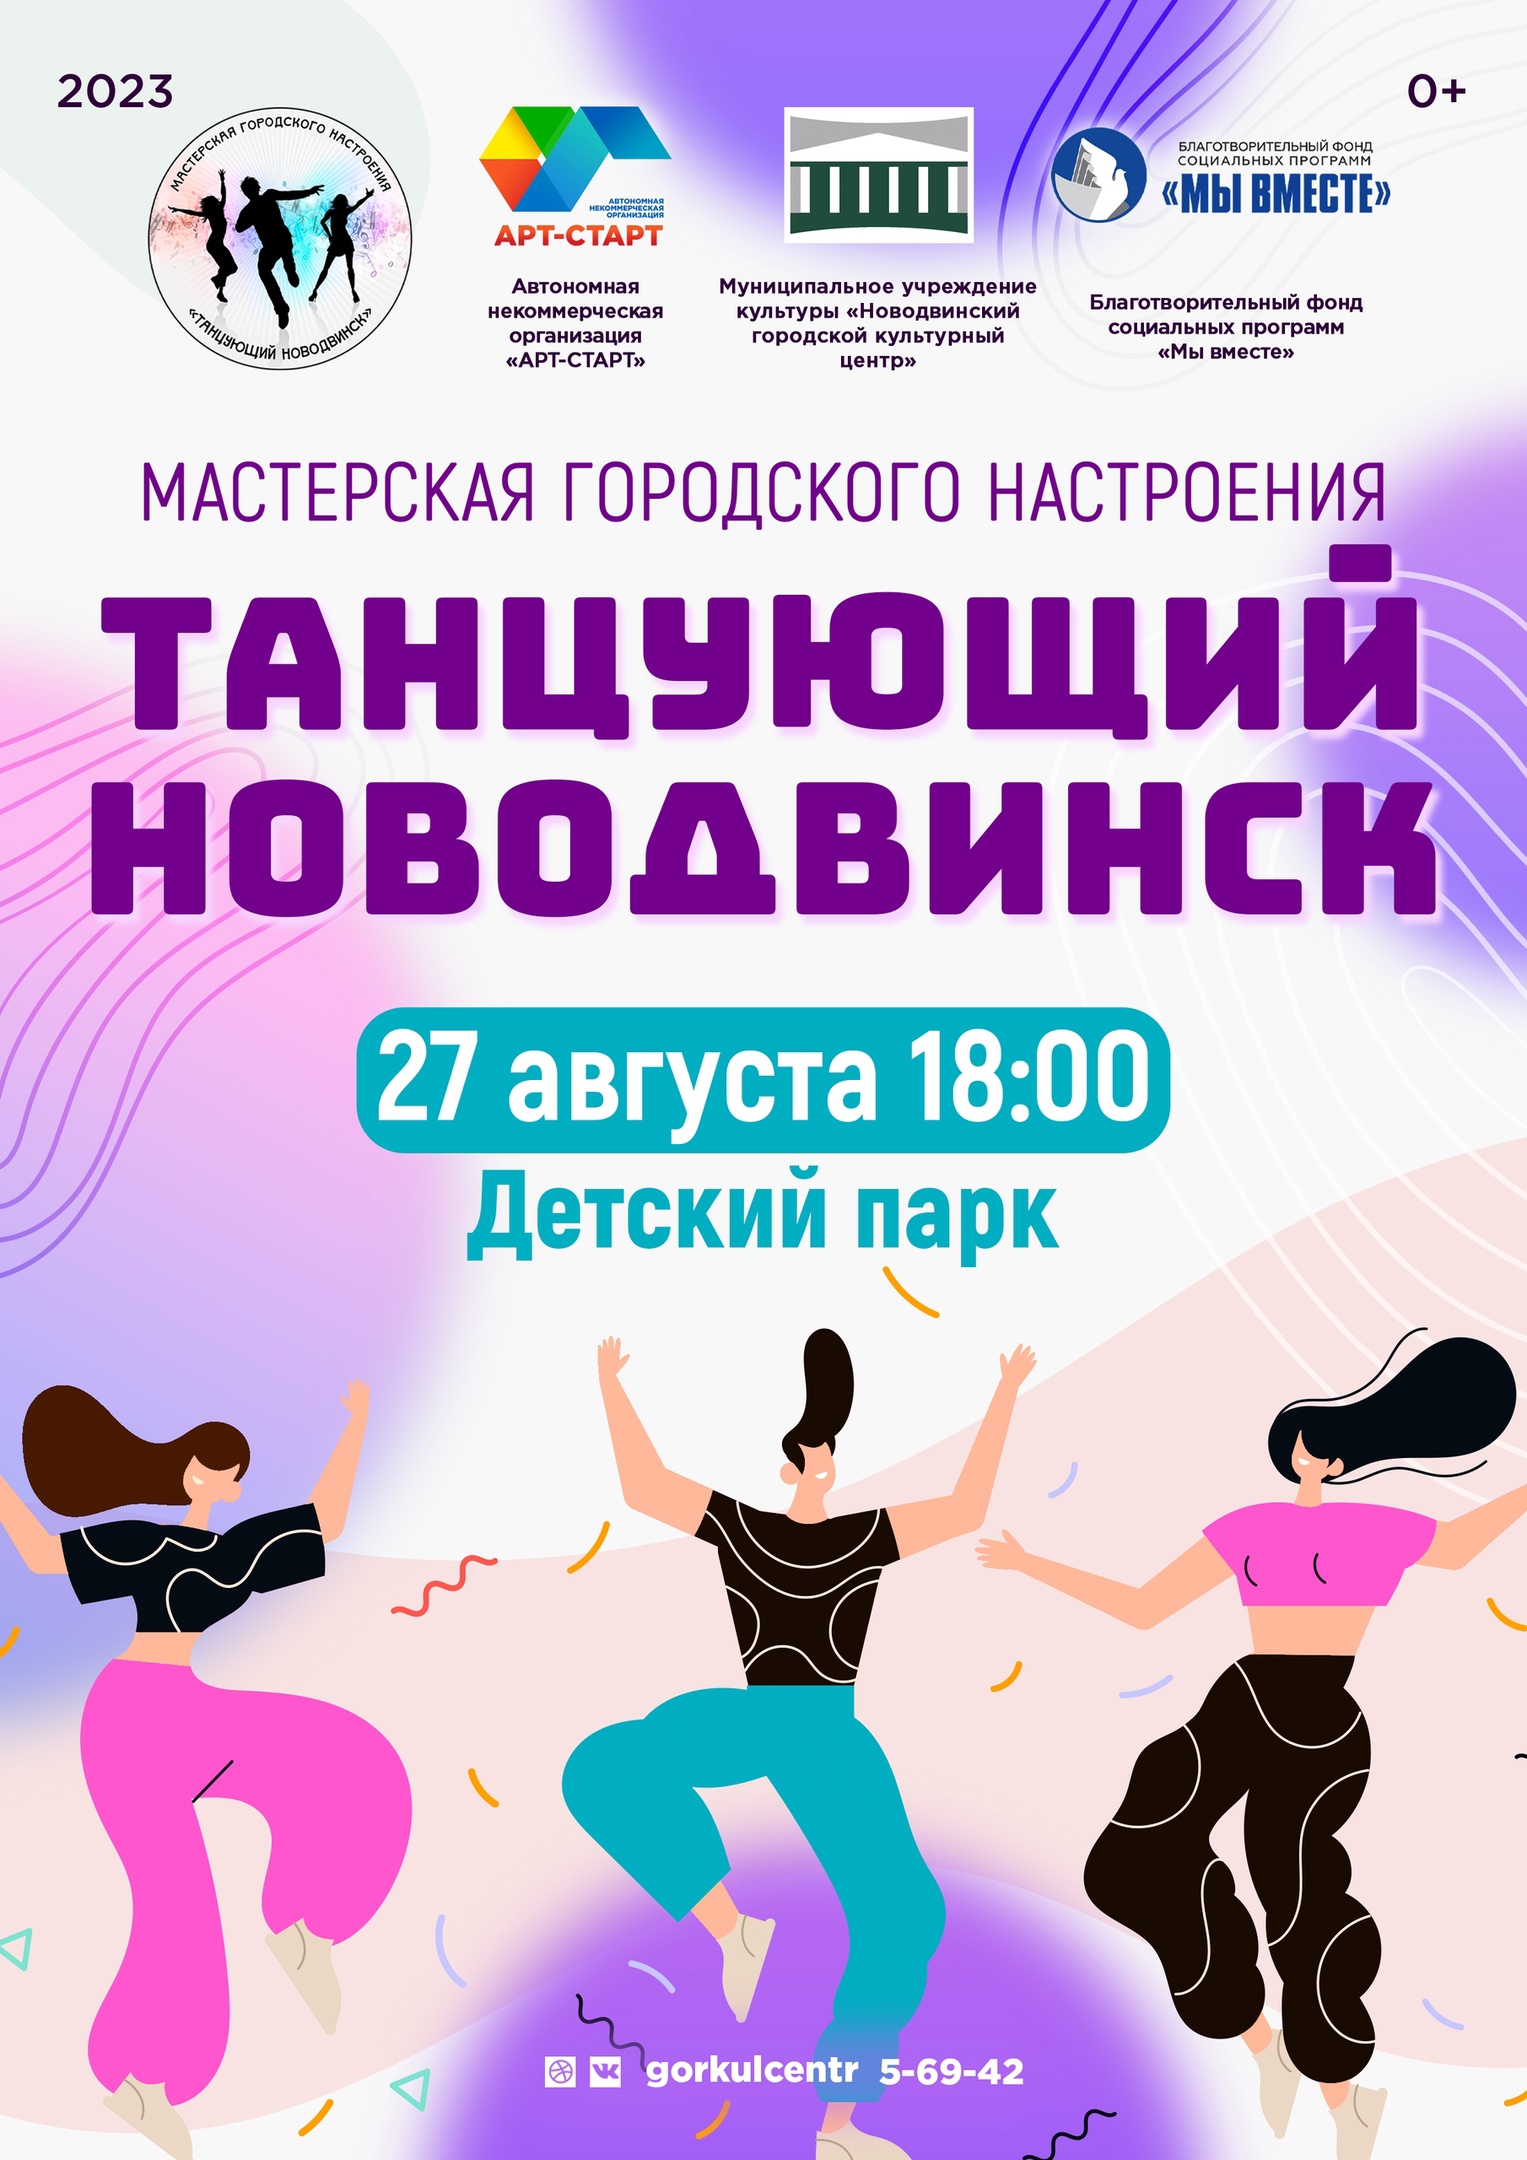 В это воскресенье мы приглашаем вас на мастерскую городского настроения «Танцующий Новодвинск», которая пройдёт в рамках празднования Дня города!